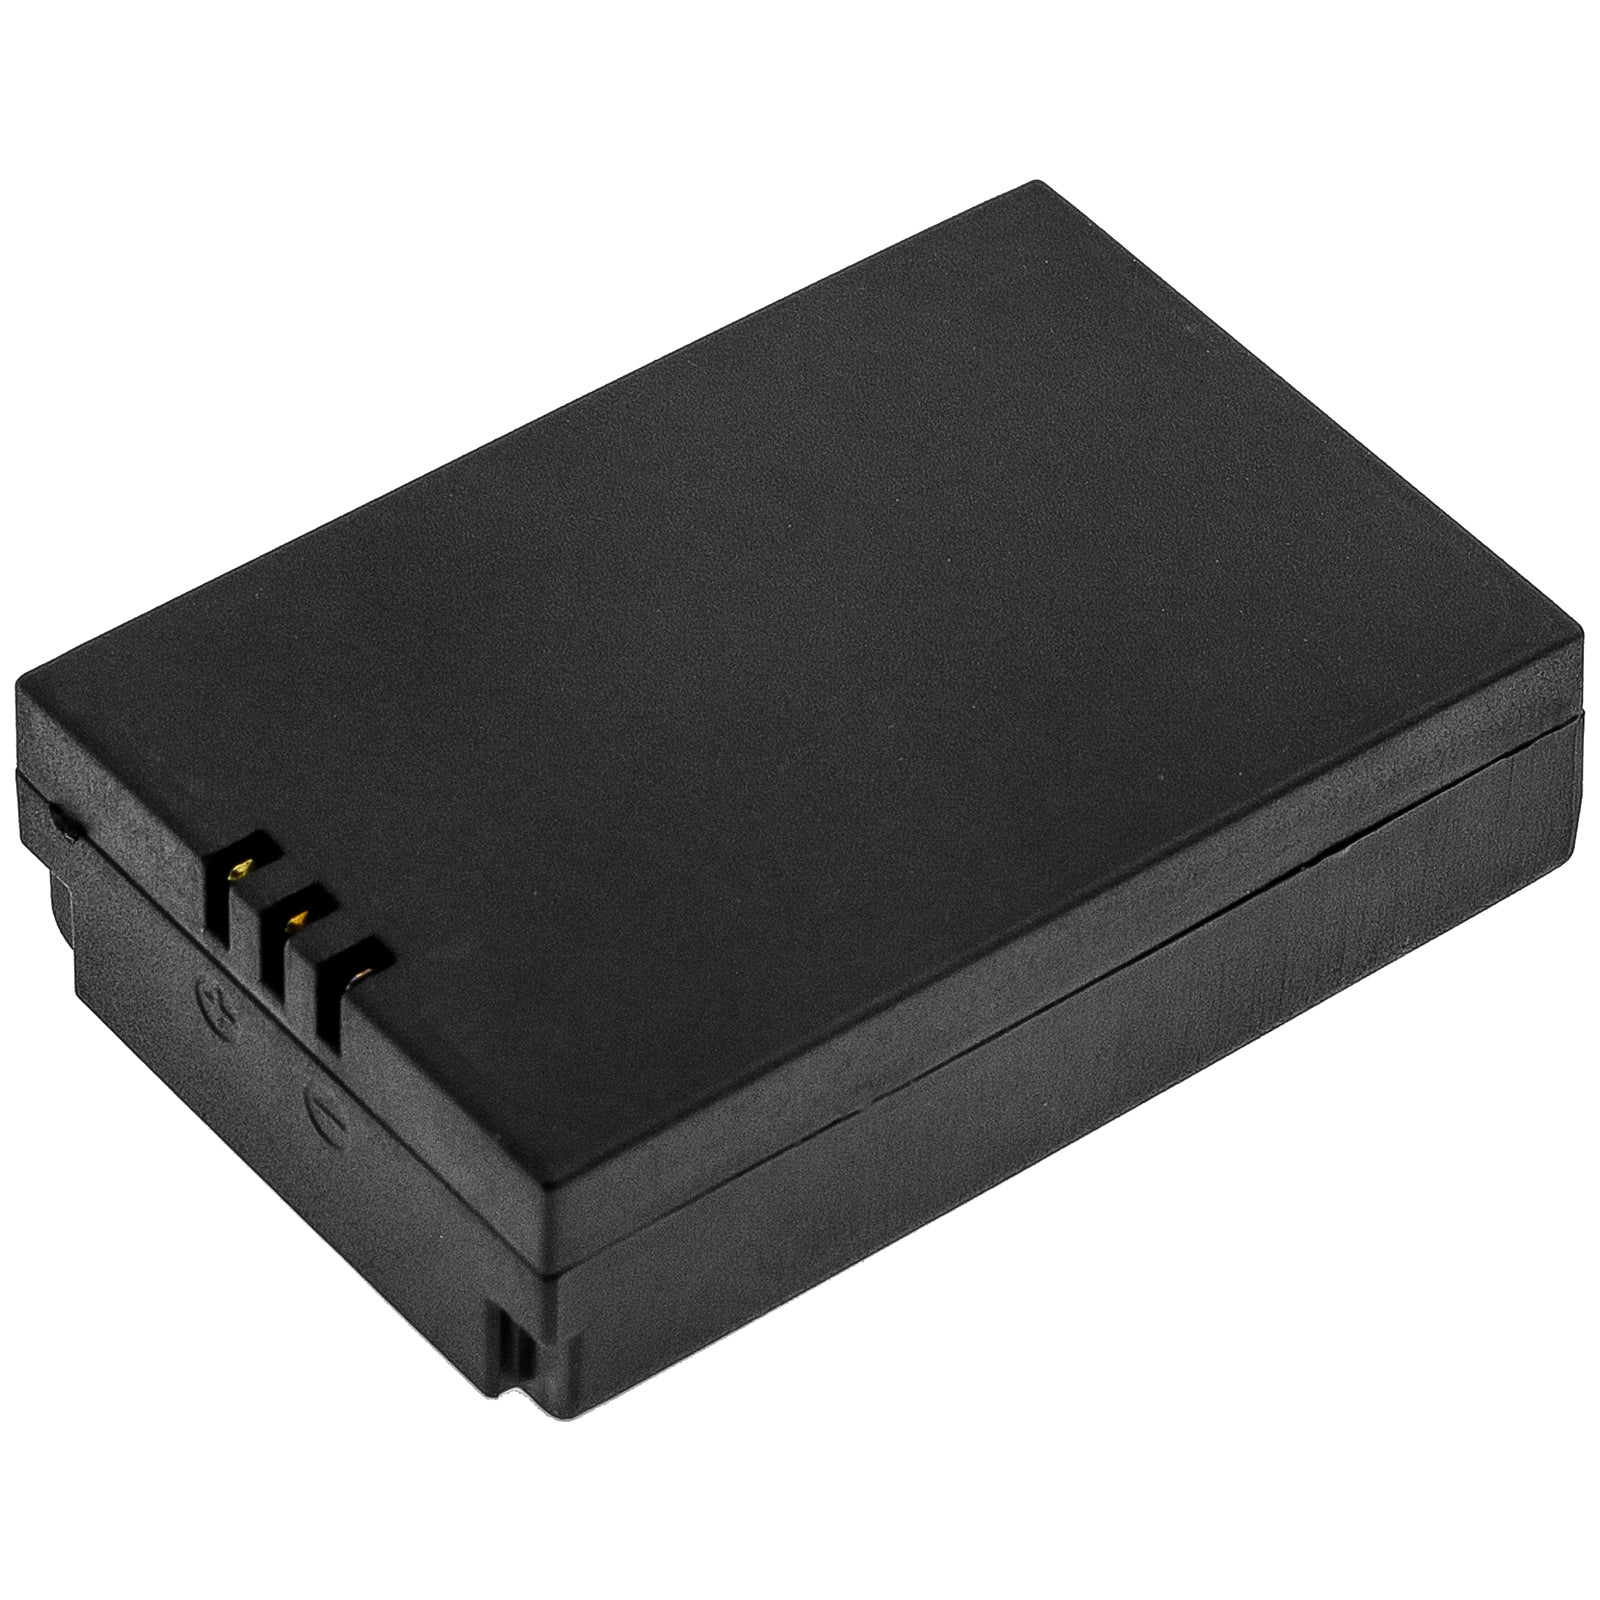 1200mAh VPC-BATT, PT603450-2S Battery for Extech Video Particle Counter VPC300 ( Built-in Camera ), CEM DT-9880, DT-9881, DT-9883M, DT-9880M, DT-9881M, DT-9850M-SMAVtronics